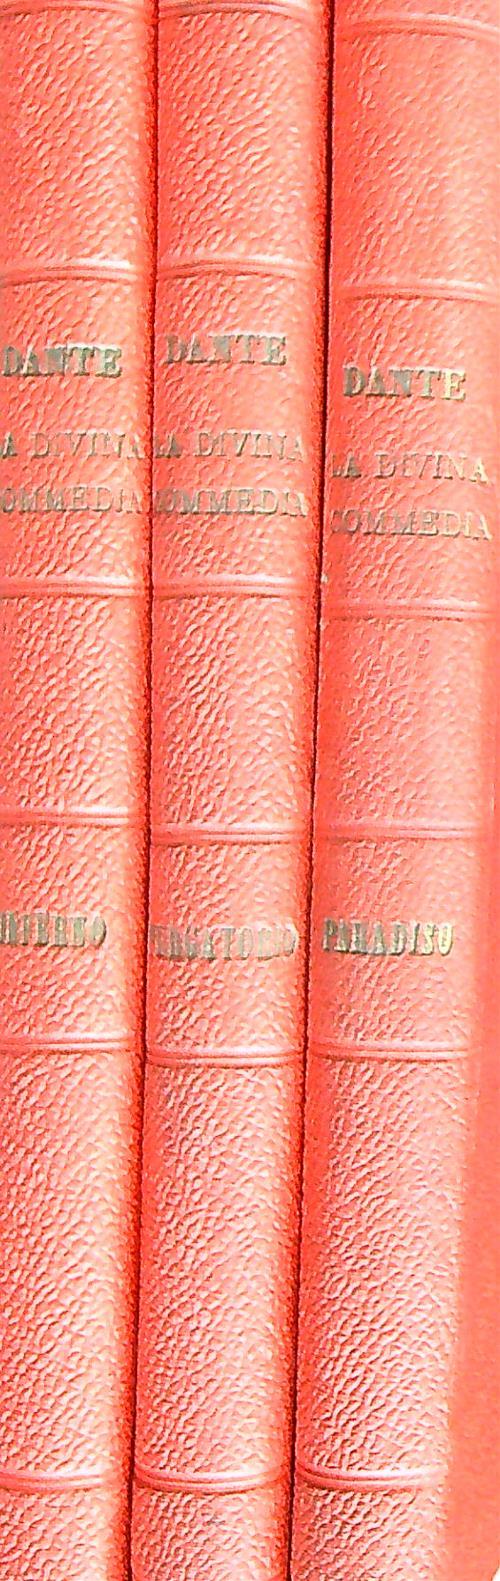 La divina commedia di Dante Alighieri ampiamente tradotta in prosa. 3vv - Dante Alighieri - copertina